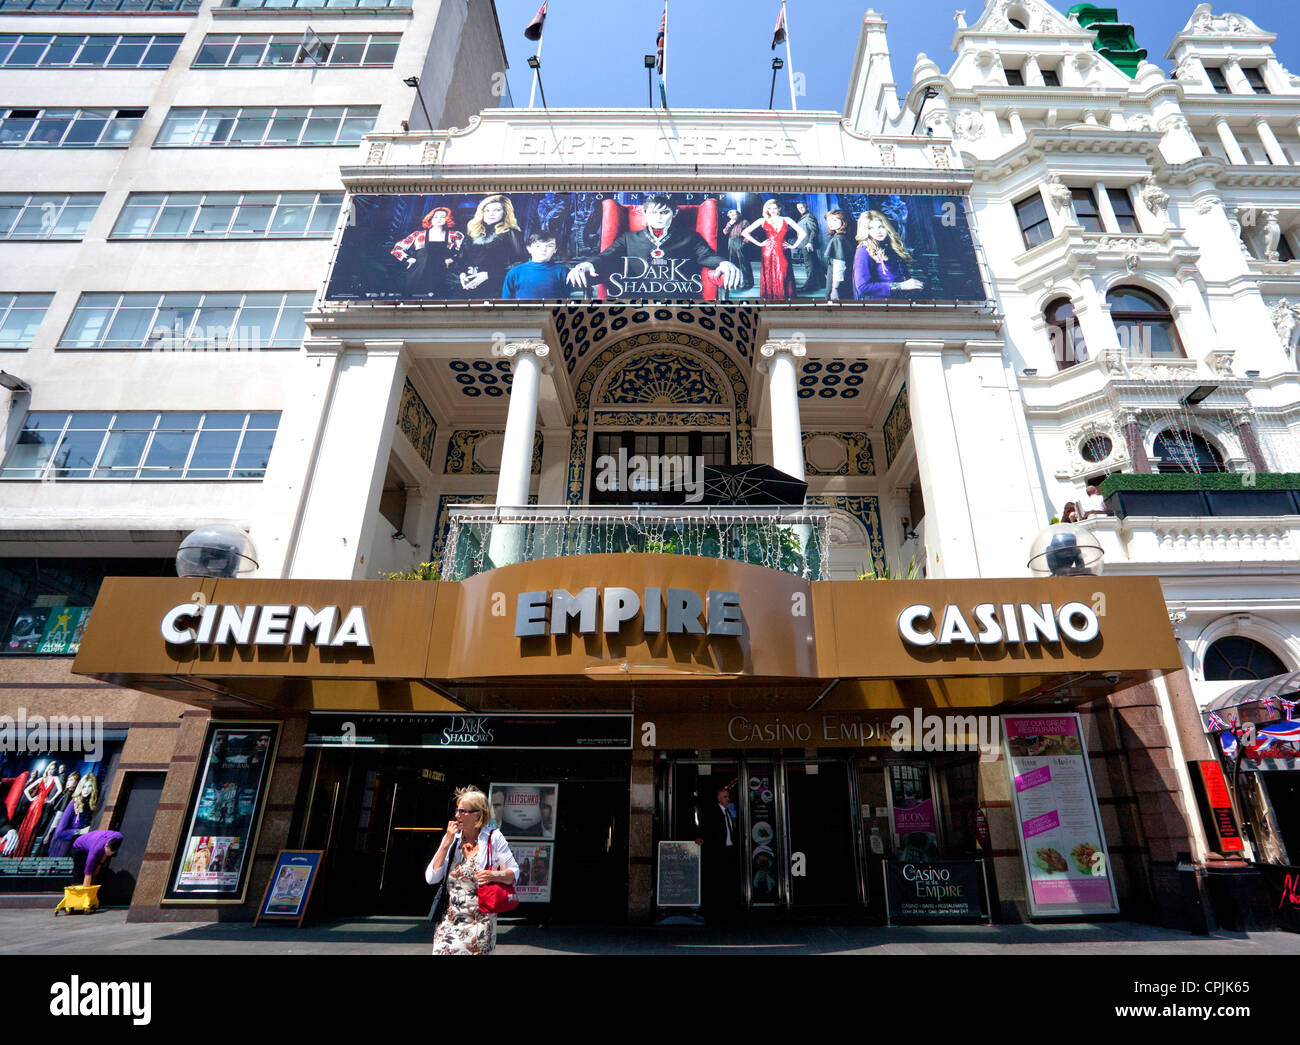 Empire Cinema & Casino am Leicester Square in London Stockfoto